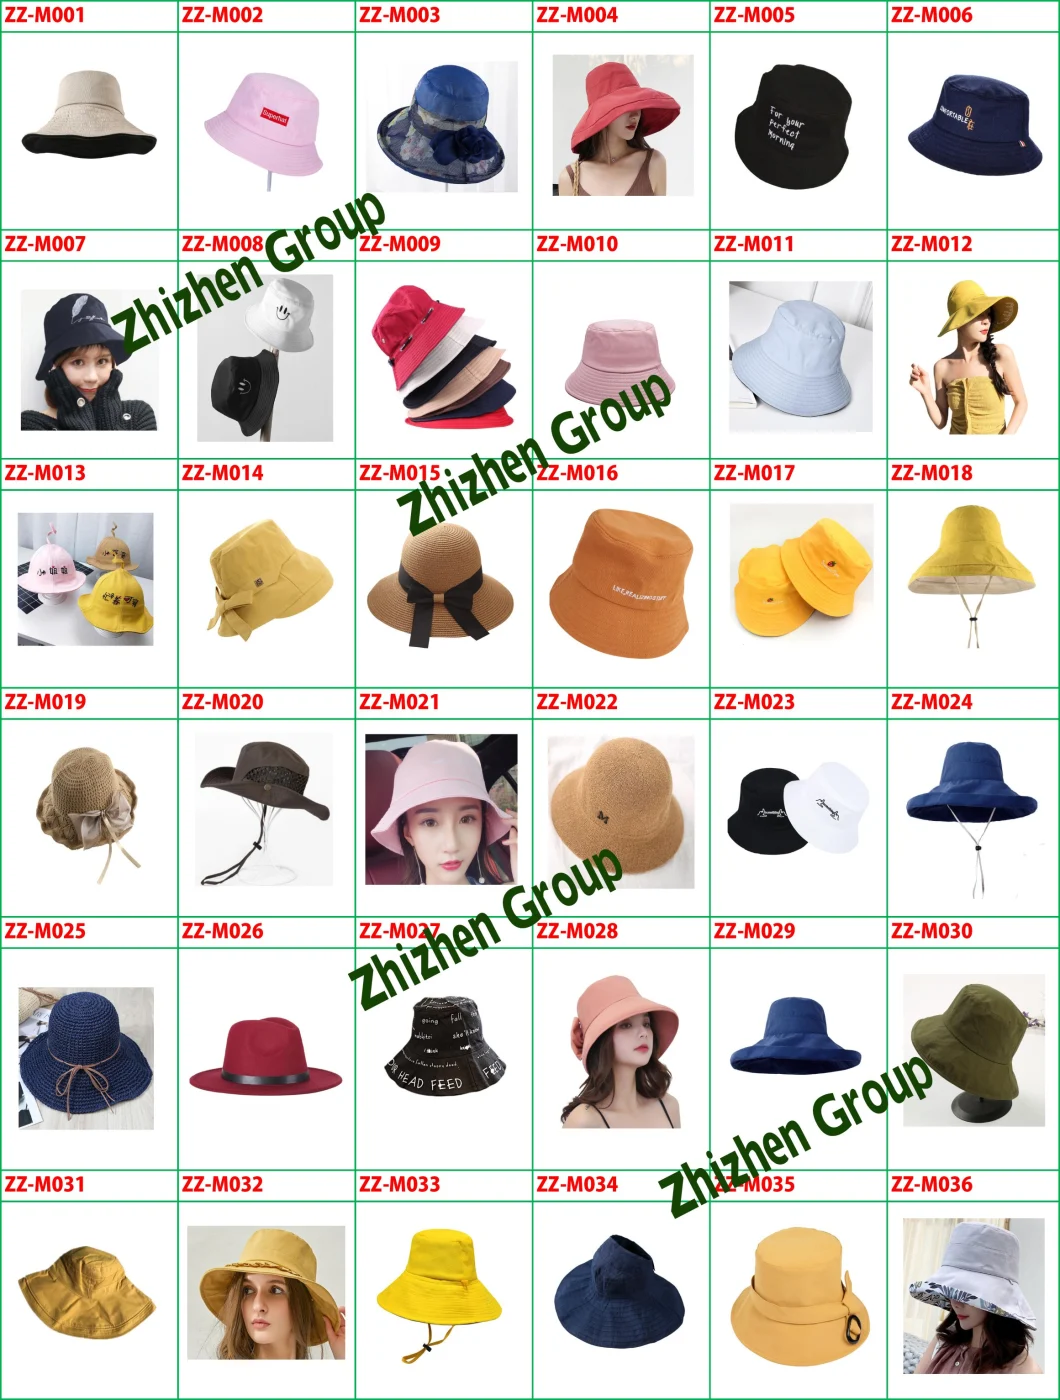 Outdoor Bucket Hats,Boonie Hat,Sun Hats for Women,Bucket Hats,Bucket Caps,UV Cap,Summer Hat,Sun Hat,Wide Brim Hat,Sun Protection,Beach Hat,Big Sun Hat